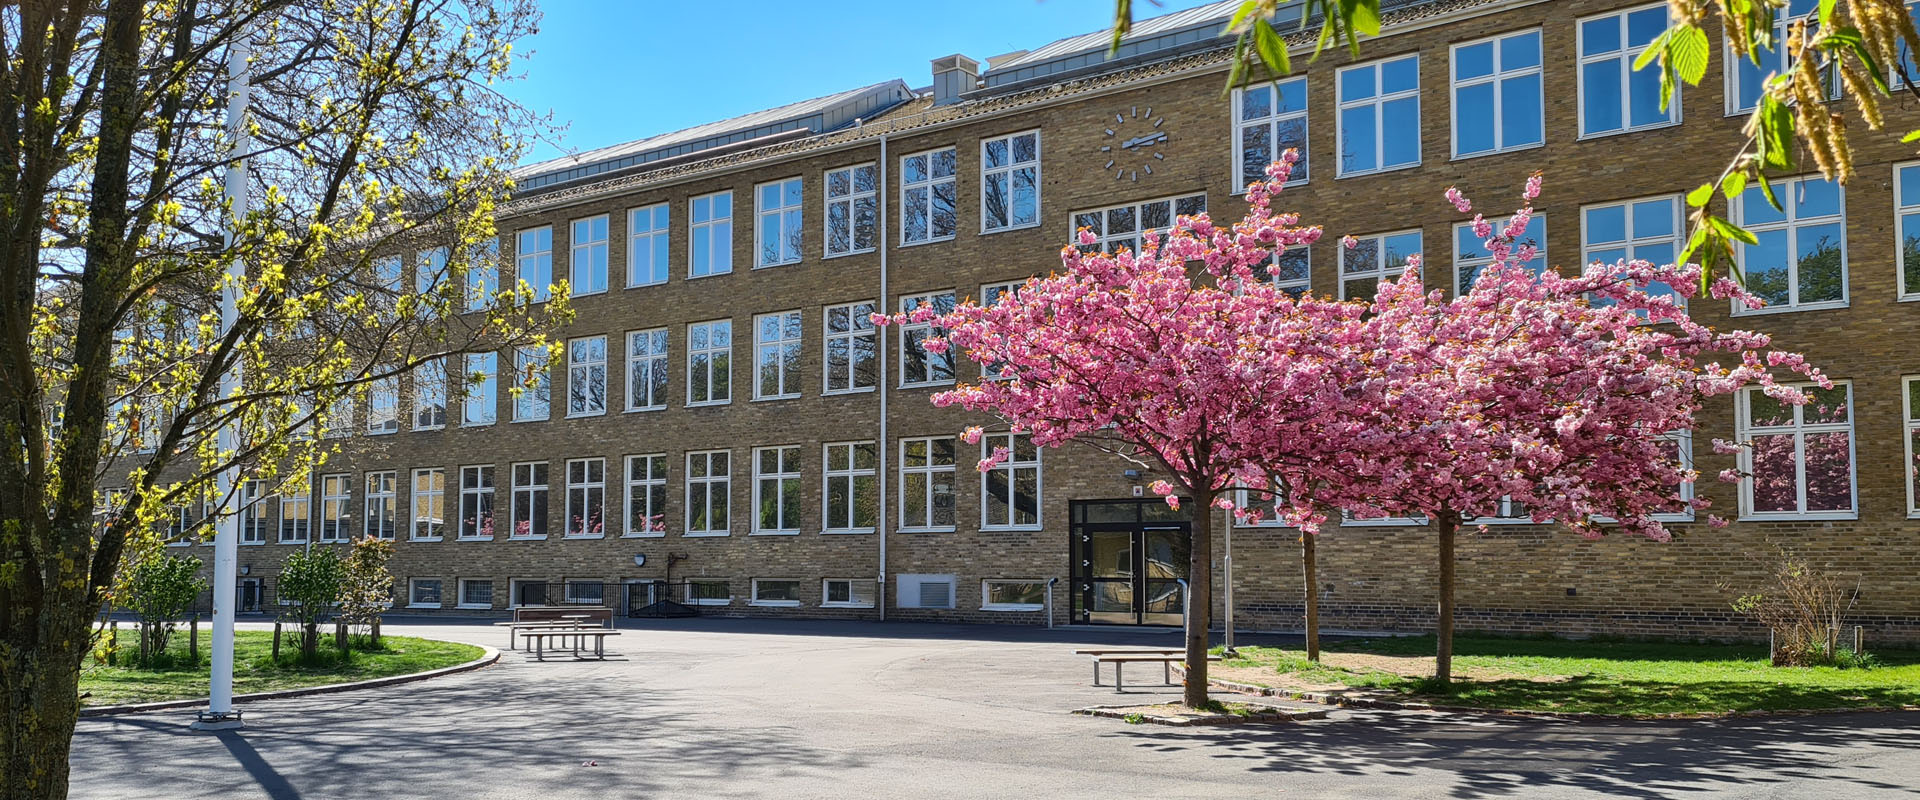 Bergaskolan har undervisning i fem byggnader omgivna av träd, gräsmattor och skolgård.